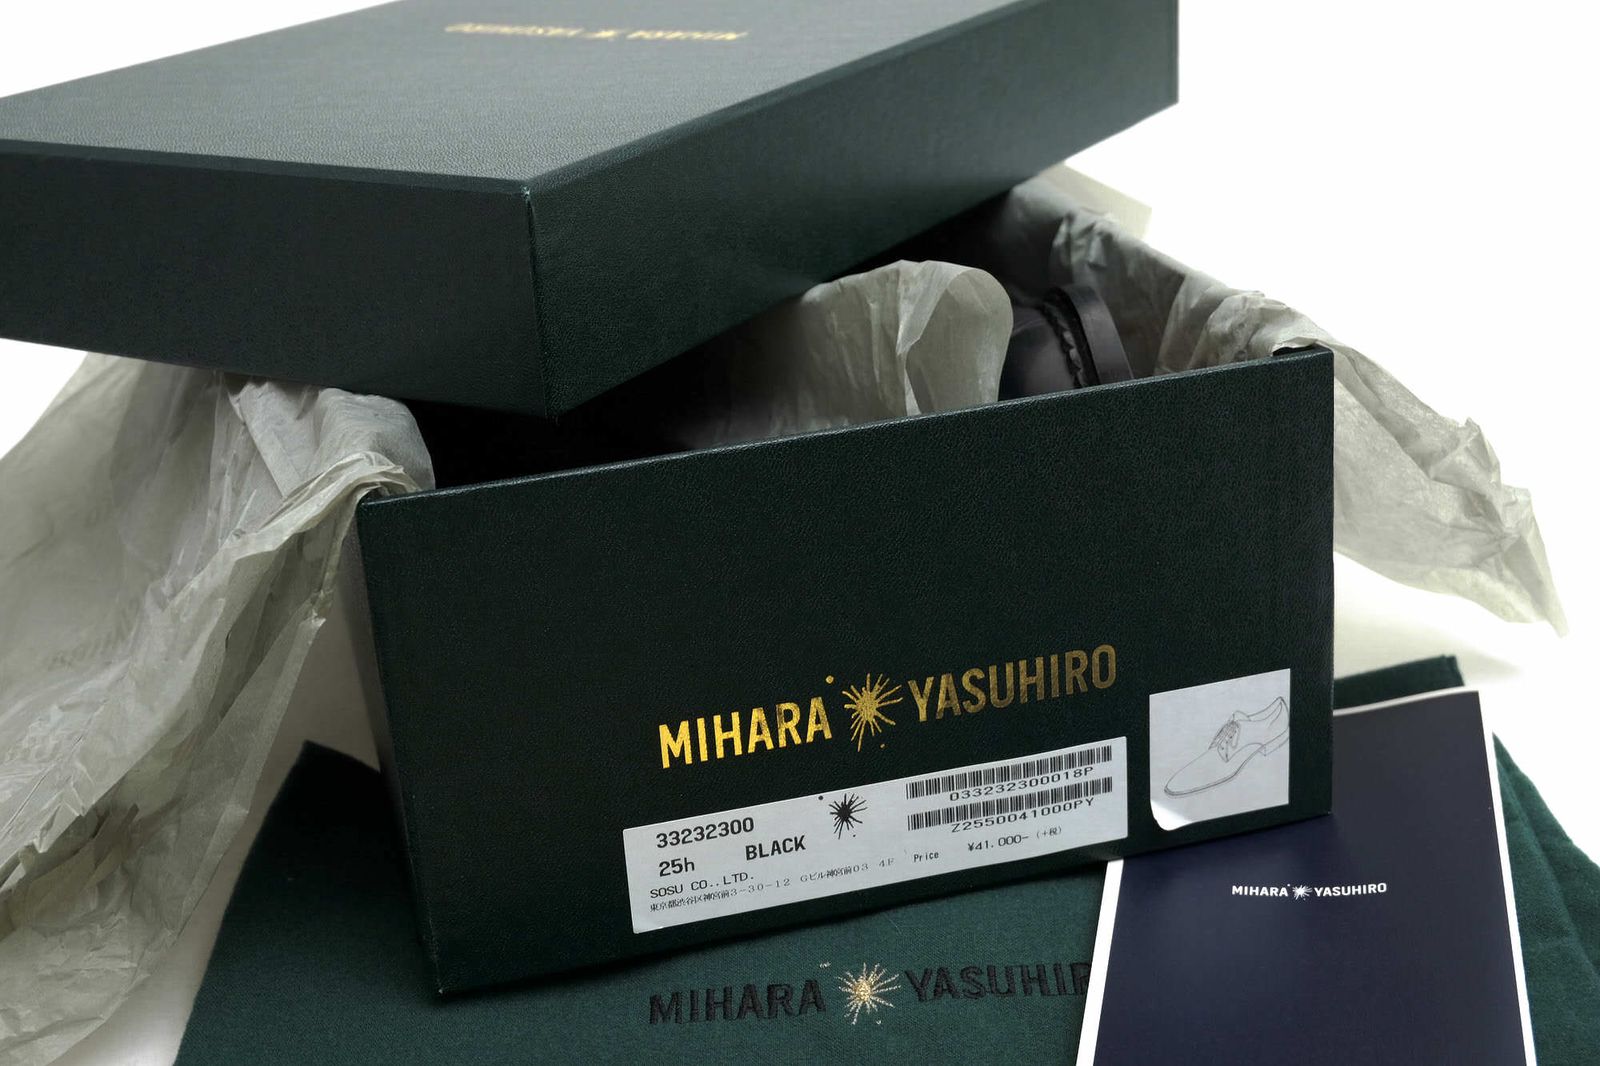 ミハラヤスヒロ／MIHARA YASUHIRO シューズ ビジネスシューズ 靴 ビジネス メンズ 男性 男性用レザー 革 本革 ブラック 黒  33232300 オックスフォードシューズ プレーントゥ レザーソール - メルカリ